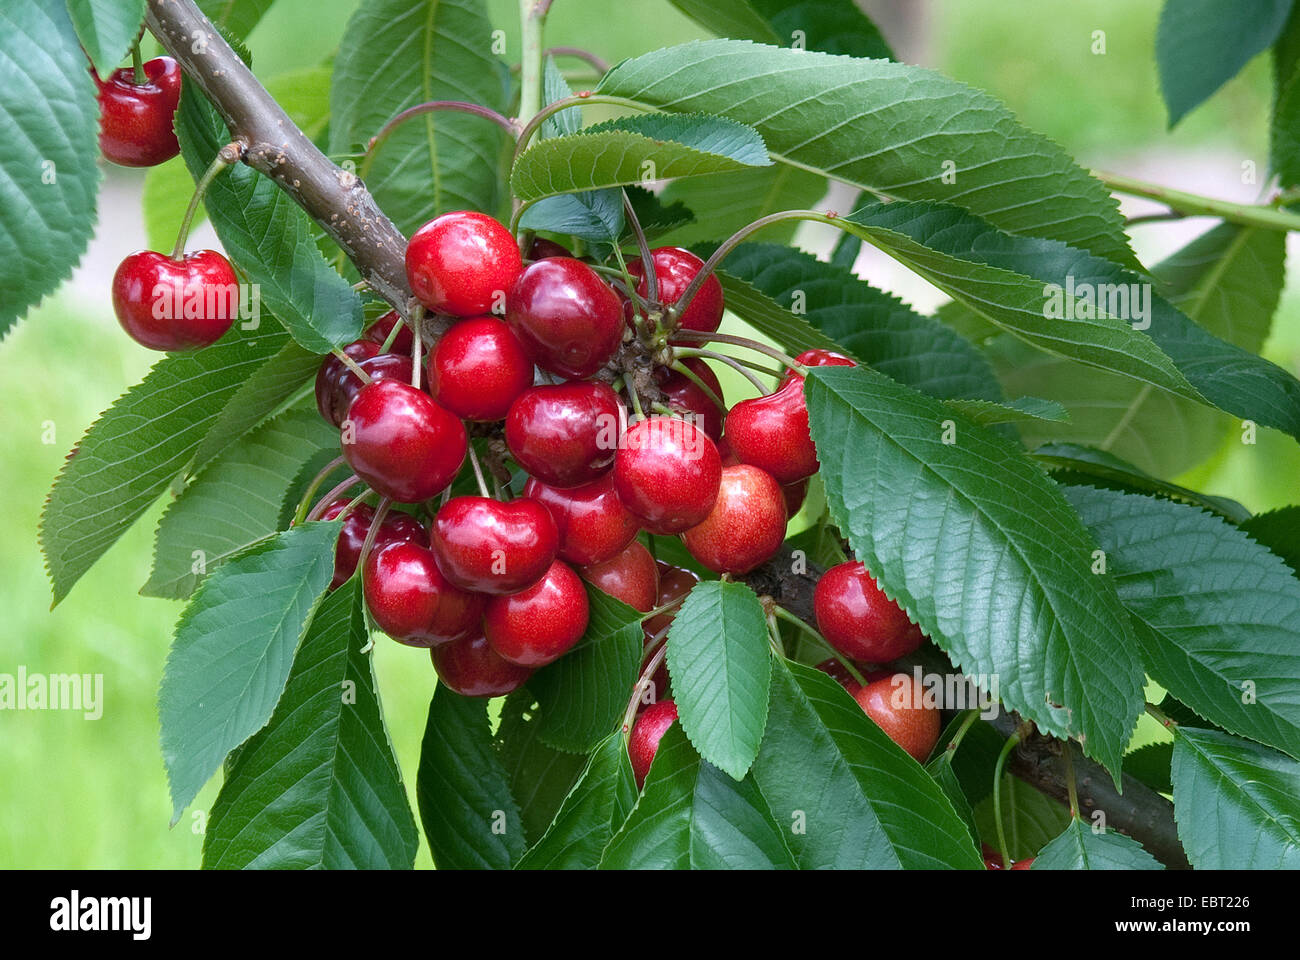 Cherry Tree, Sweet cherry (Prunus avium ''Skeena'', Prunus avium Skeena), le cultivar Skeena, les cerises sur un arbre Banque D'Images